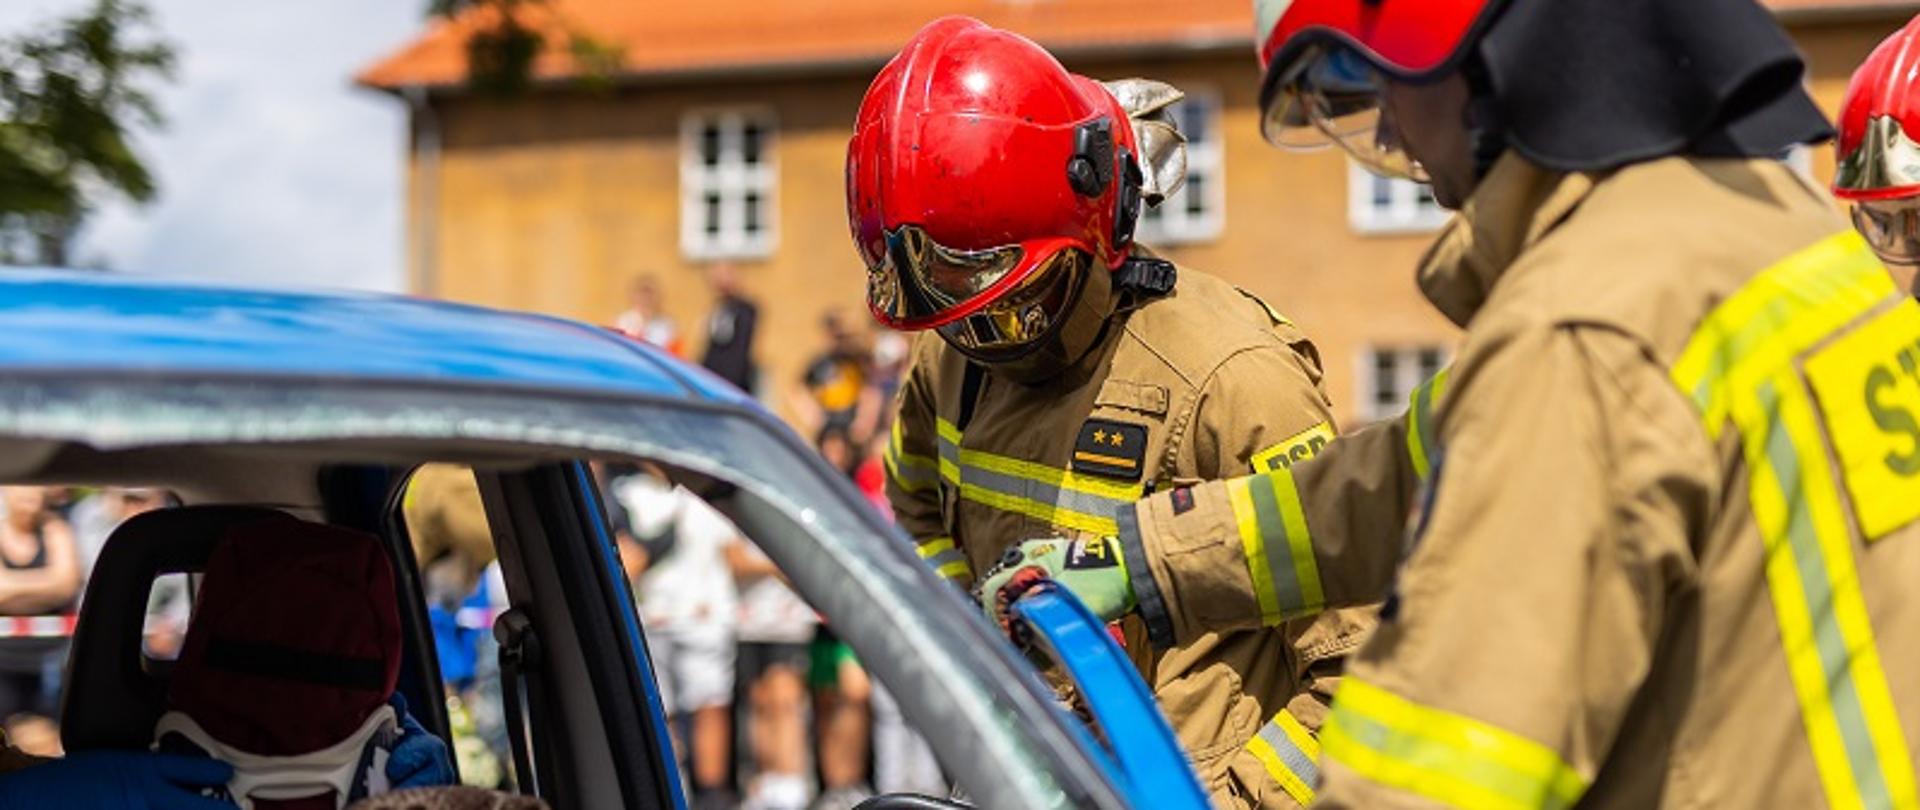 Zdjęcie przedstawia strażaków usuwających drzwi pojazdu